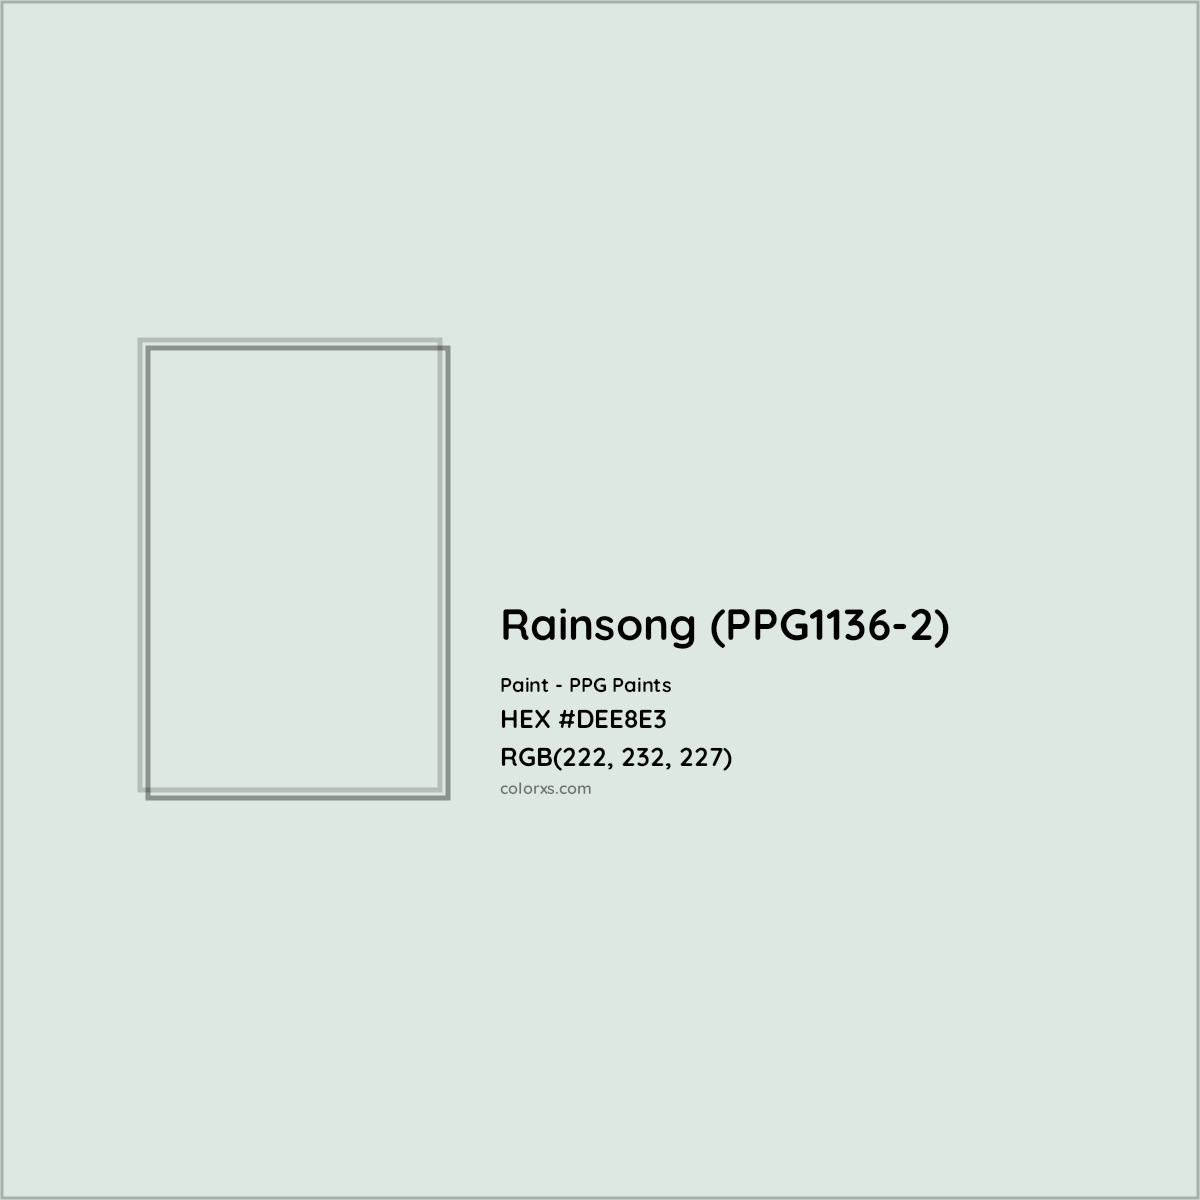 HEX #DEE8E3 Rainsong (PPG1136-2) Paint PPG Paints - Color Code